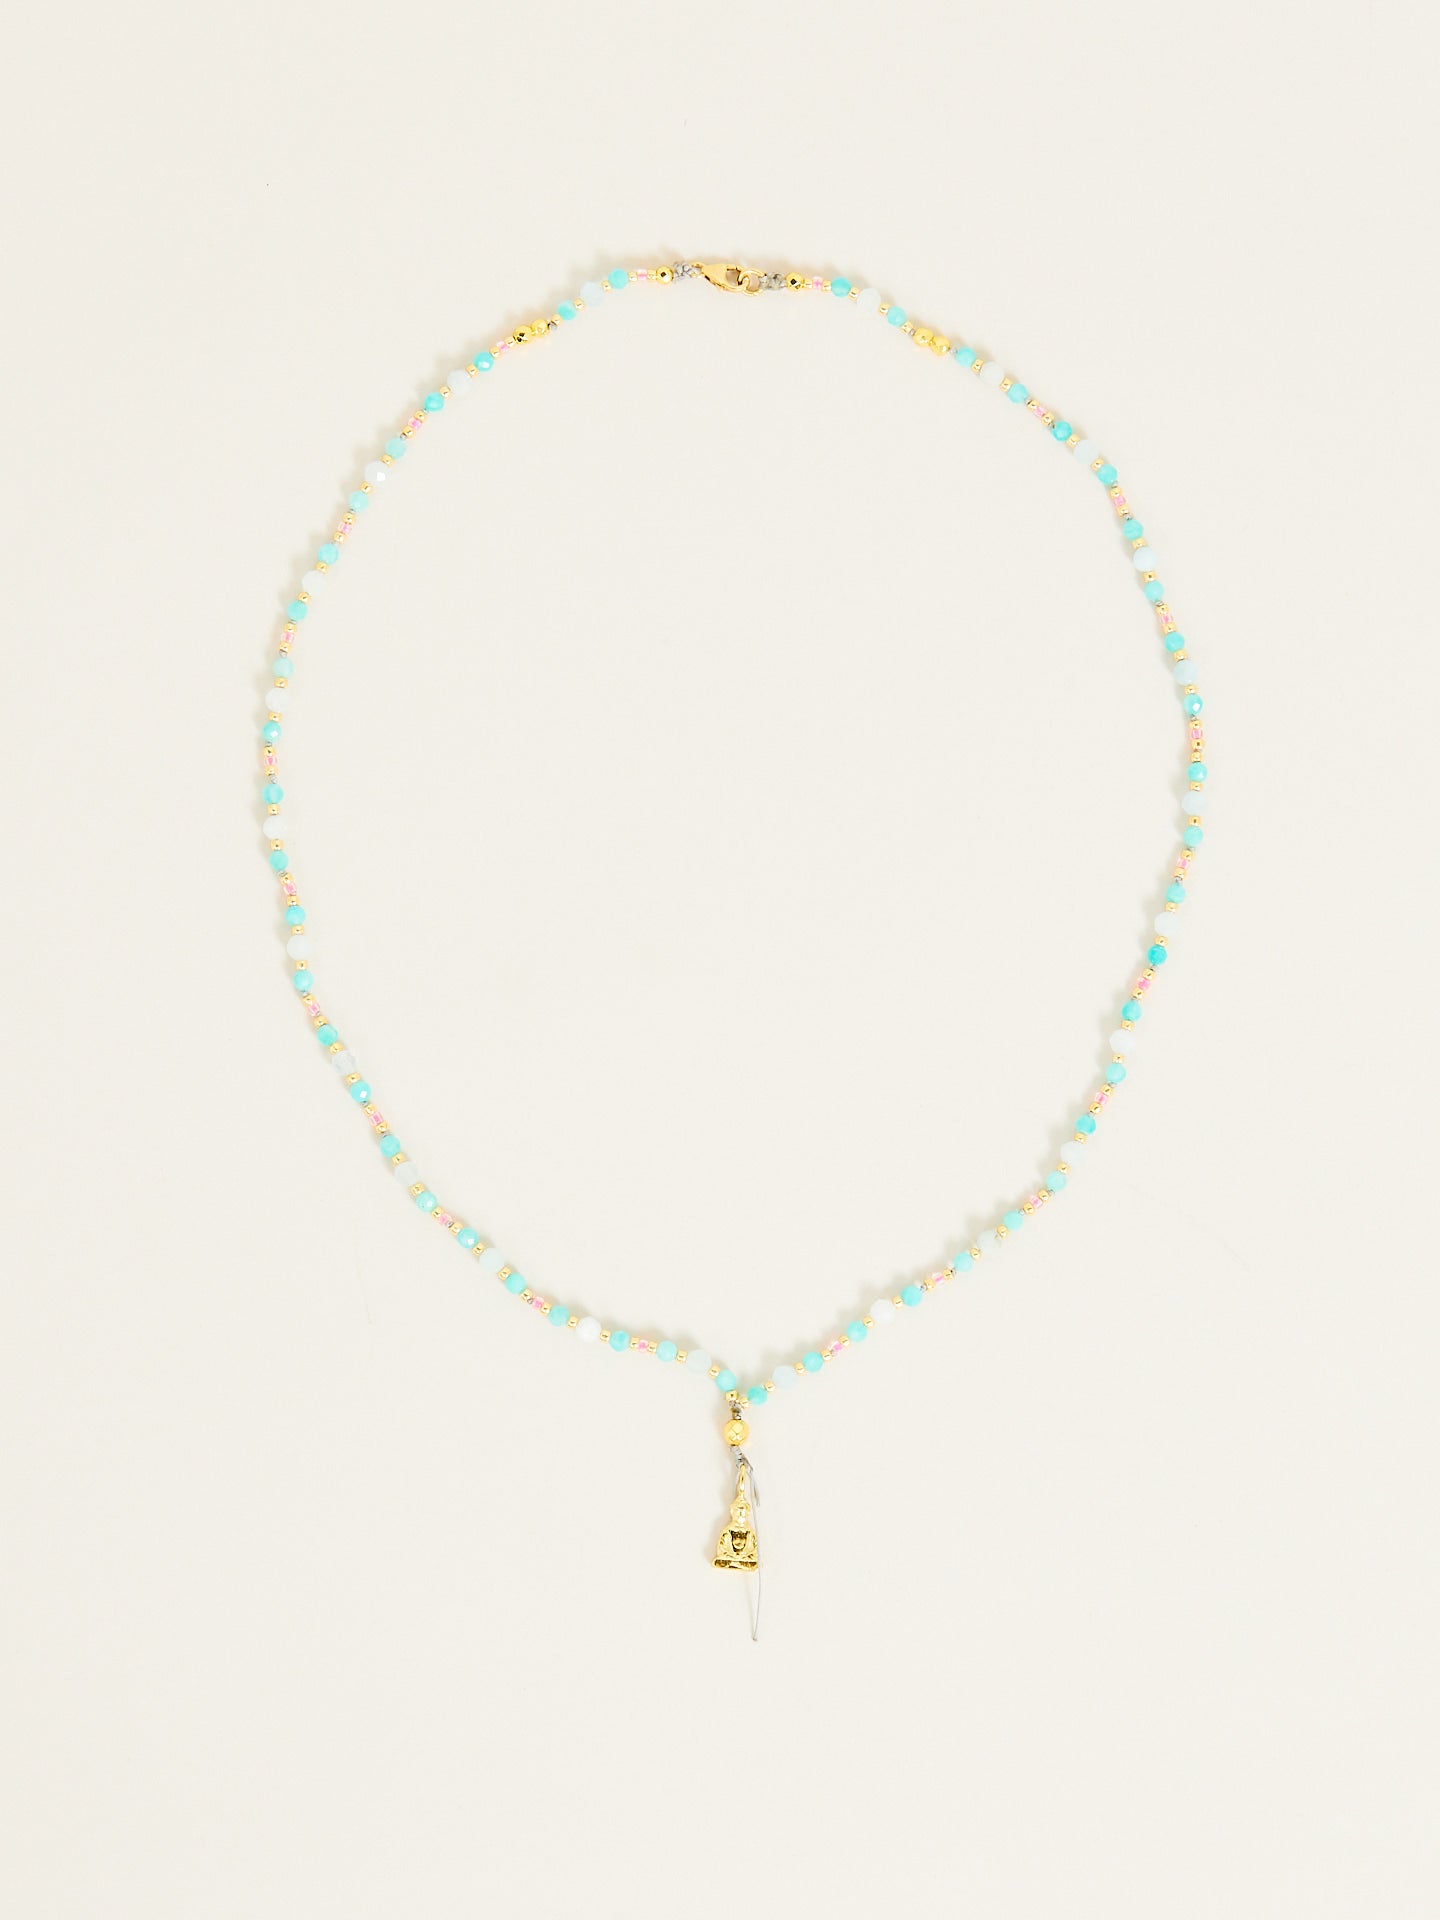 Zen Halskette mit buddha Anhänger und hellen Perlen in Pastelltönen